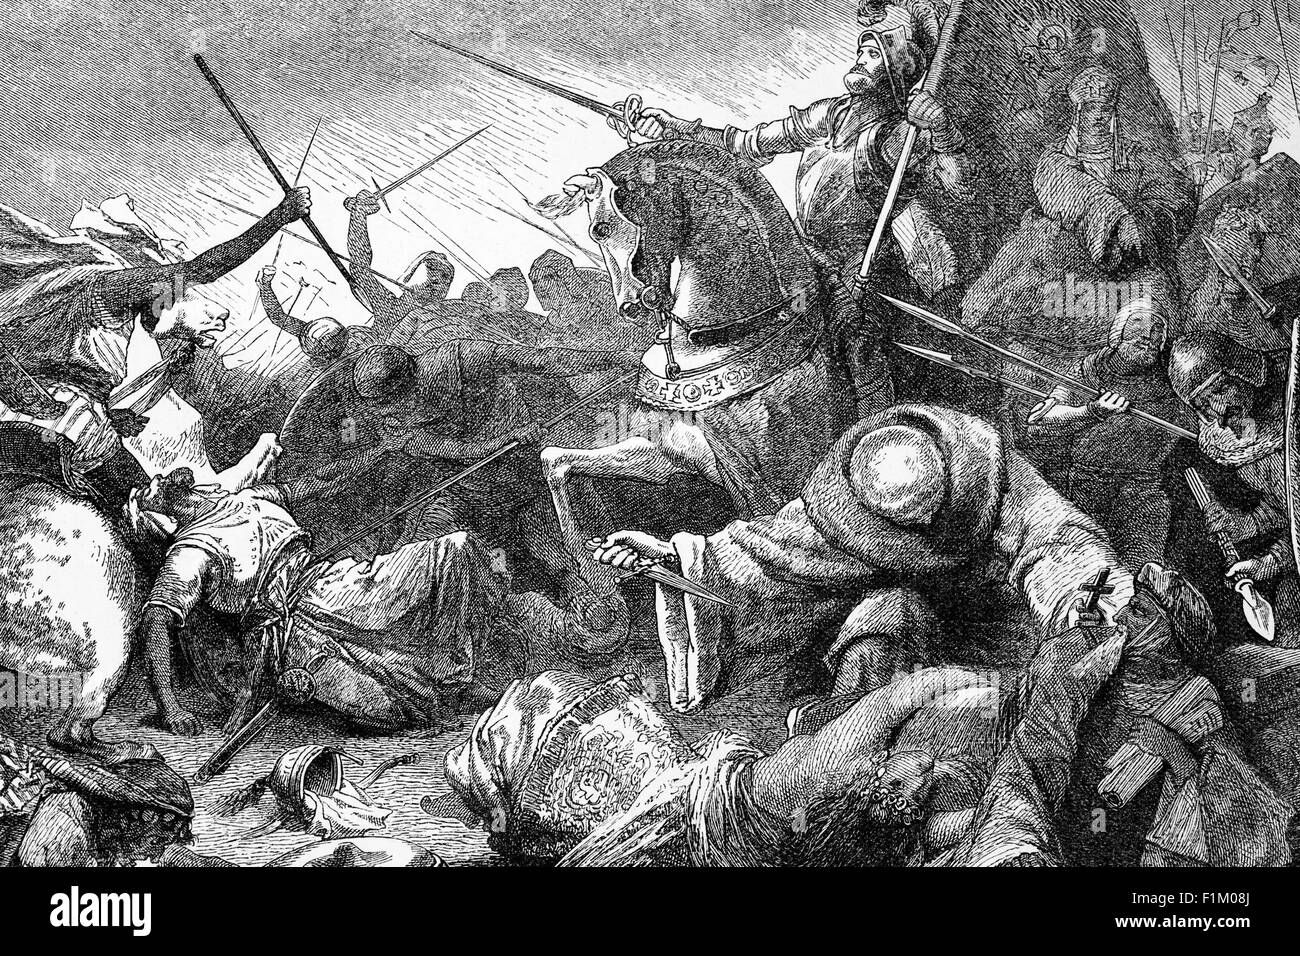 La Battaglia di Las Navas de Tolosa, conosciuta nella storia araba come Battaglia di al-Uqab, ebbe luogo il 16 luglio 1212 e fu un importante punto di svolta nella Reconquista durante la storia medievale della Spagna. Le forze cristiane sotto il re Alfonso VIII di Castiglia furono unite dagli eserciti dei suoi rivali, Sancho VII di Navarra e Pietro II d'Aragona, in battaglia contro i governanti musulmani Almohad della metà meridionale della penisola iberica. La sconfitta schiacciante degli Almohad ha accelerato significativamente il loro declino sia nella penisola iberica che nel Maghreb un decennio più tardi. Foto Stock